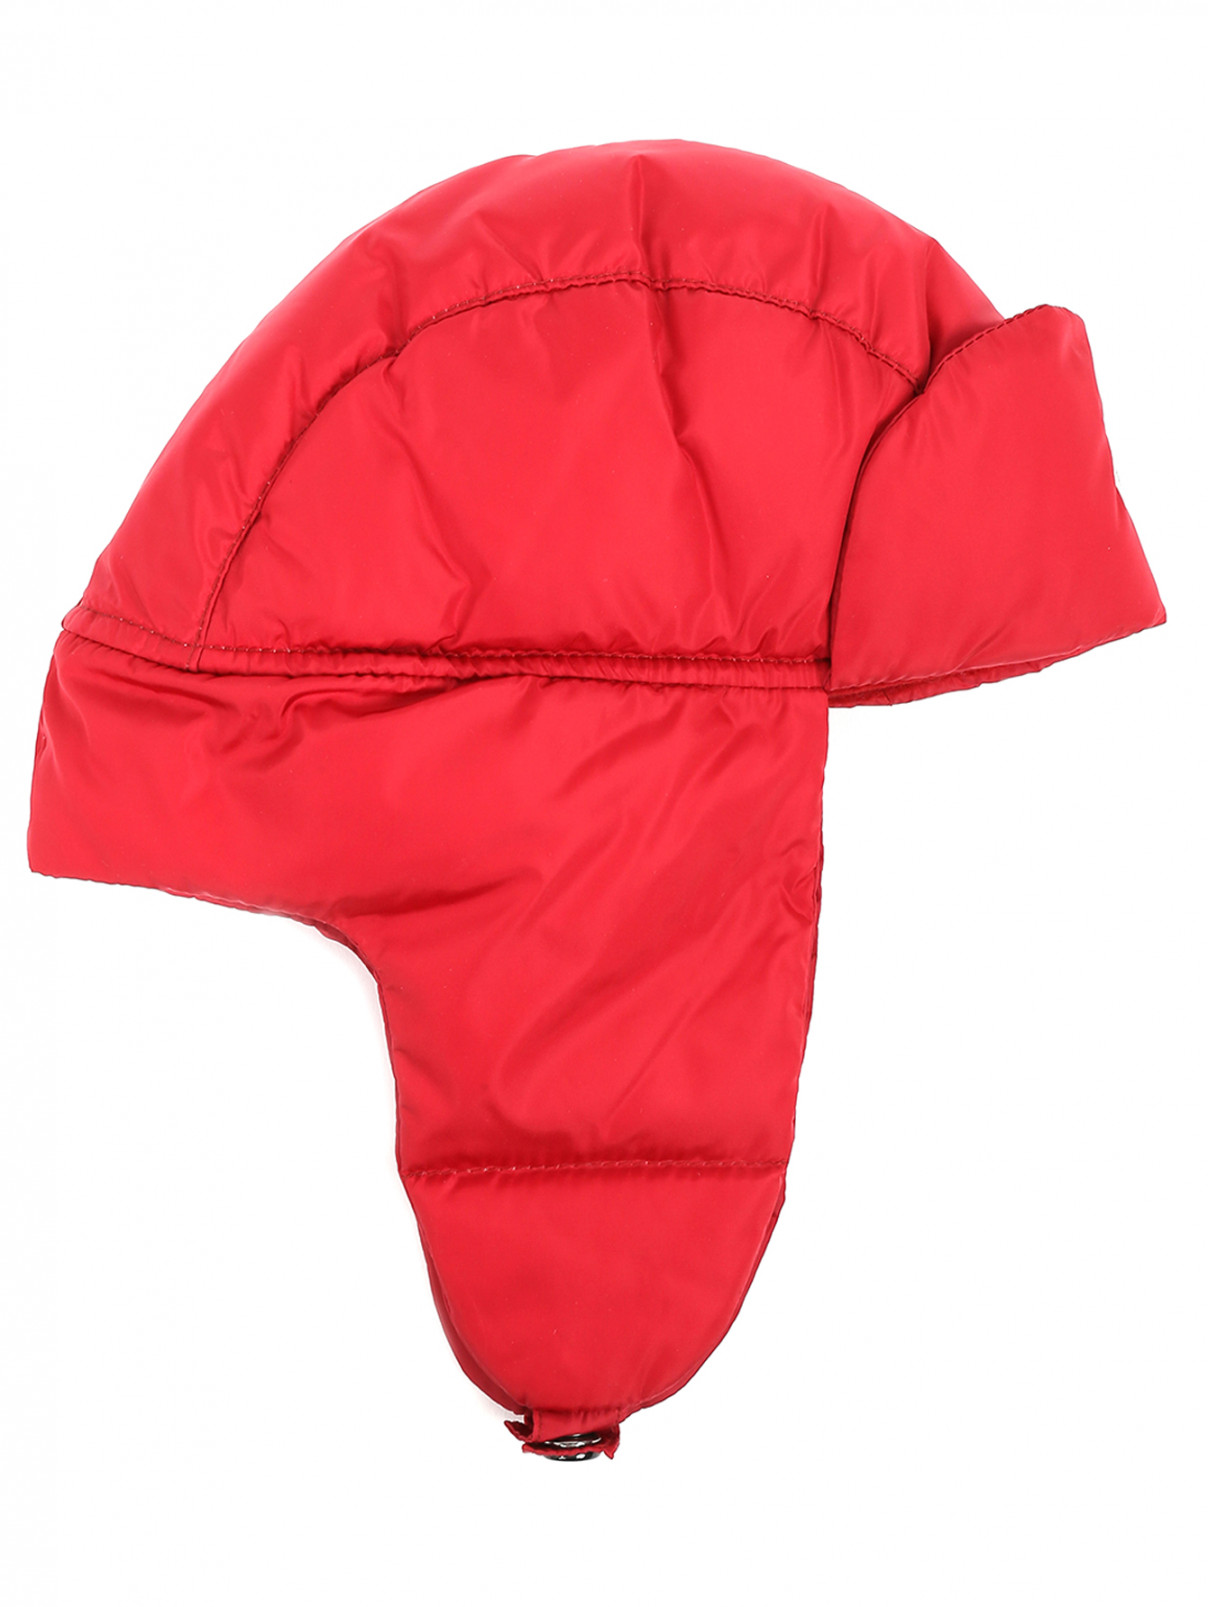 Пуховая шапка-ушанка Moncler  –  Общий вид  – Цвет:  Красный